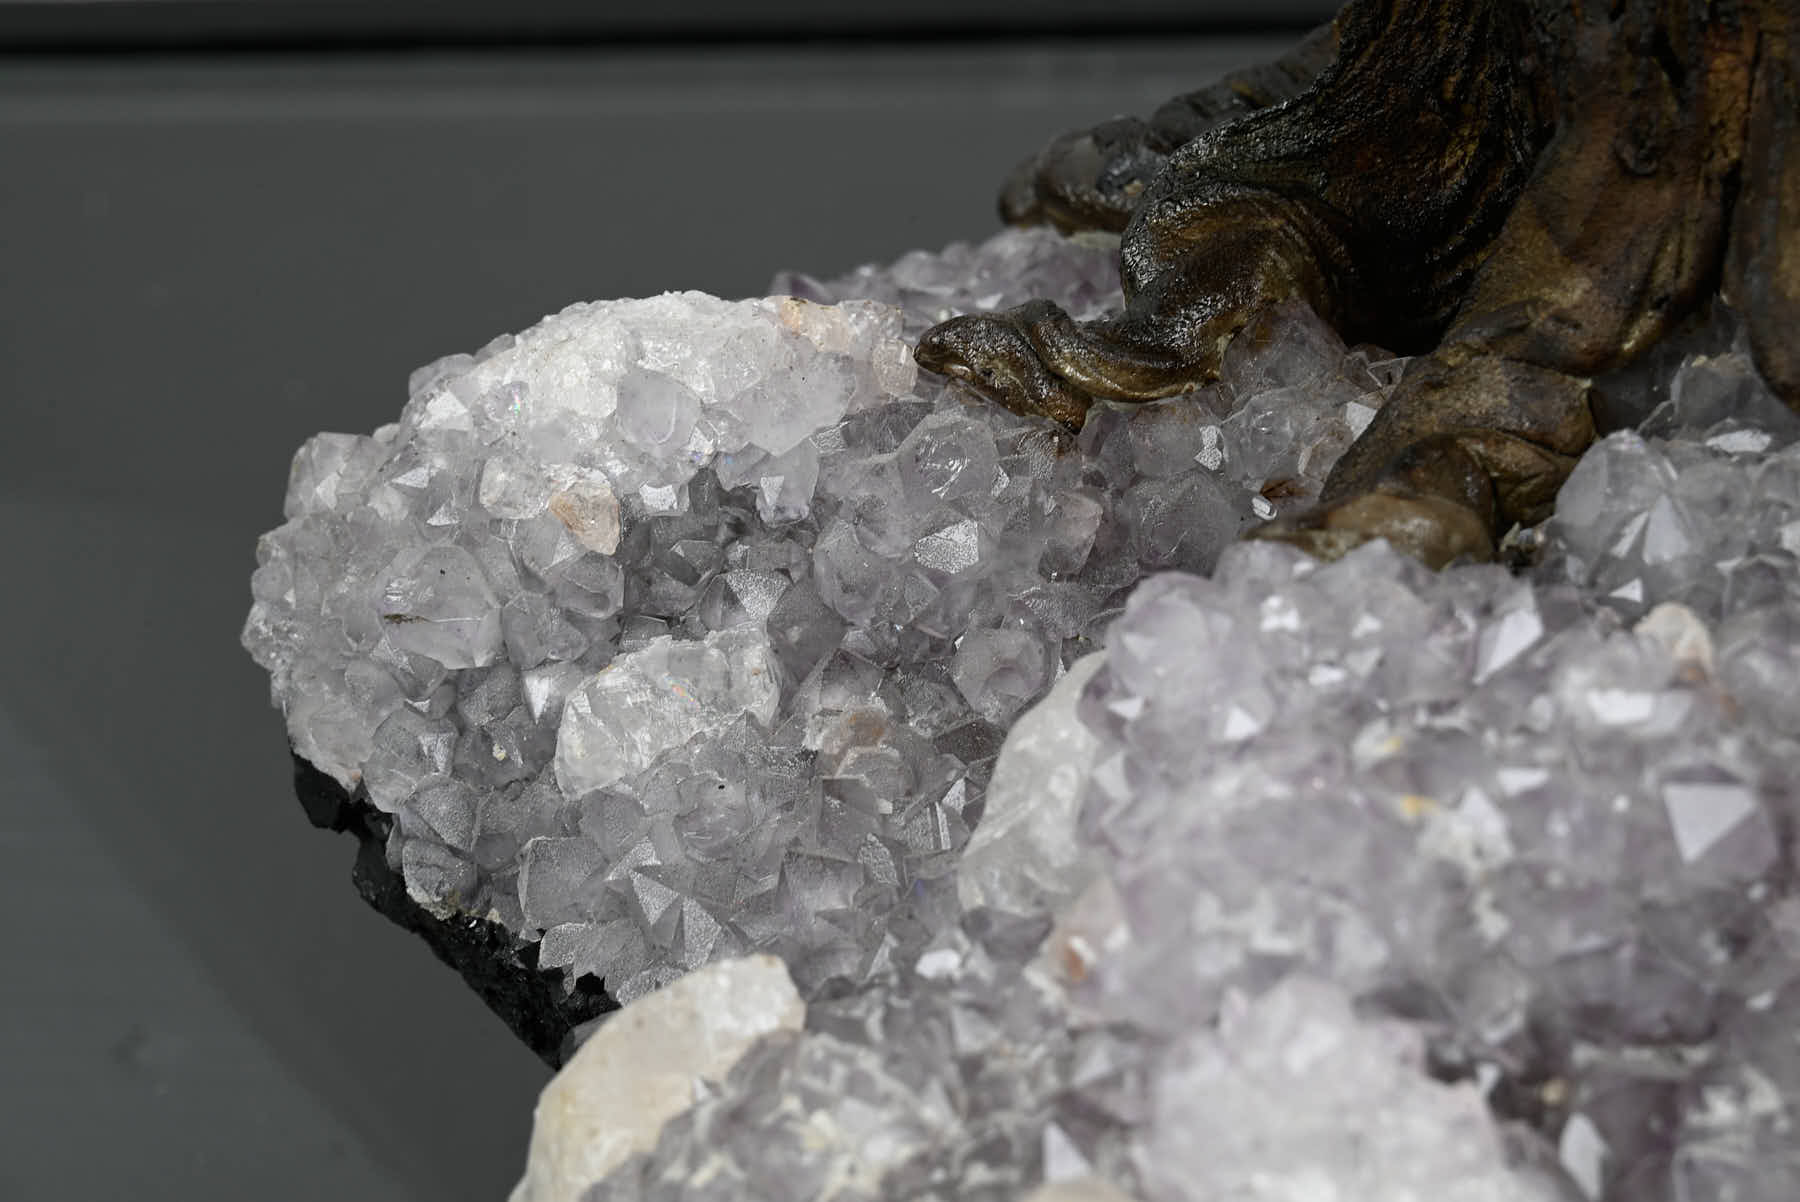 Handmade 59cm Tall Gemstone Tree with Amethyst base and 540 Amethyst gems - #TRAMET-56002